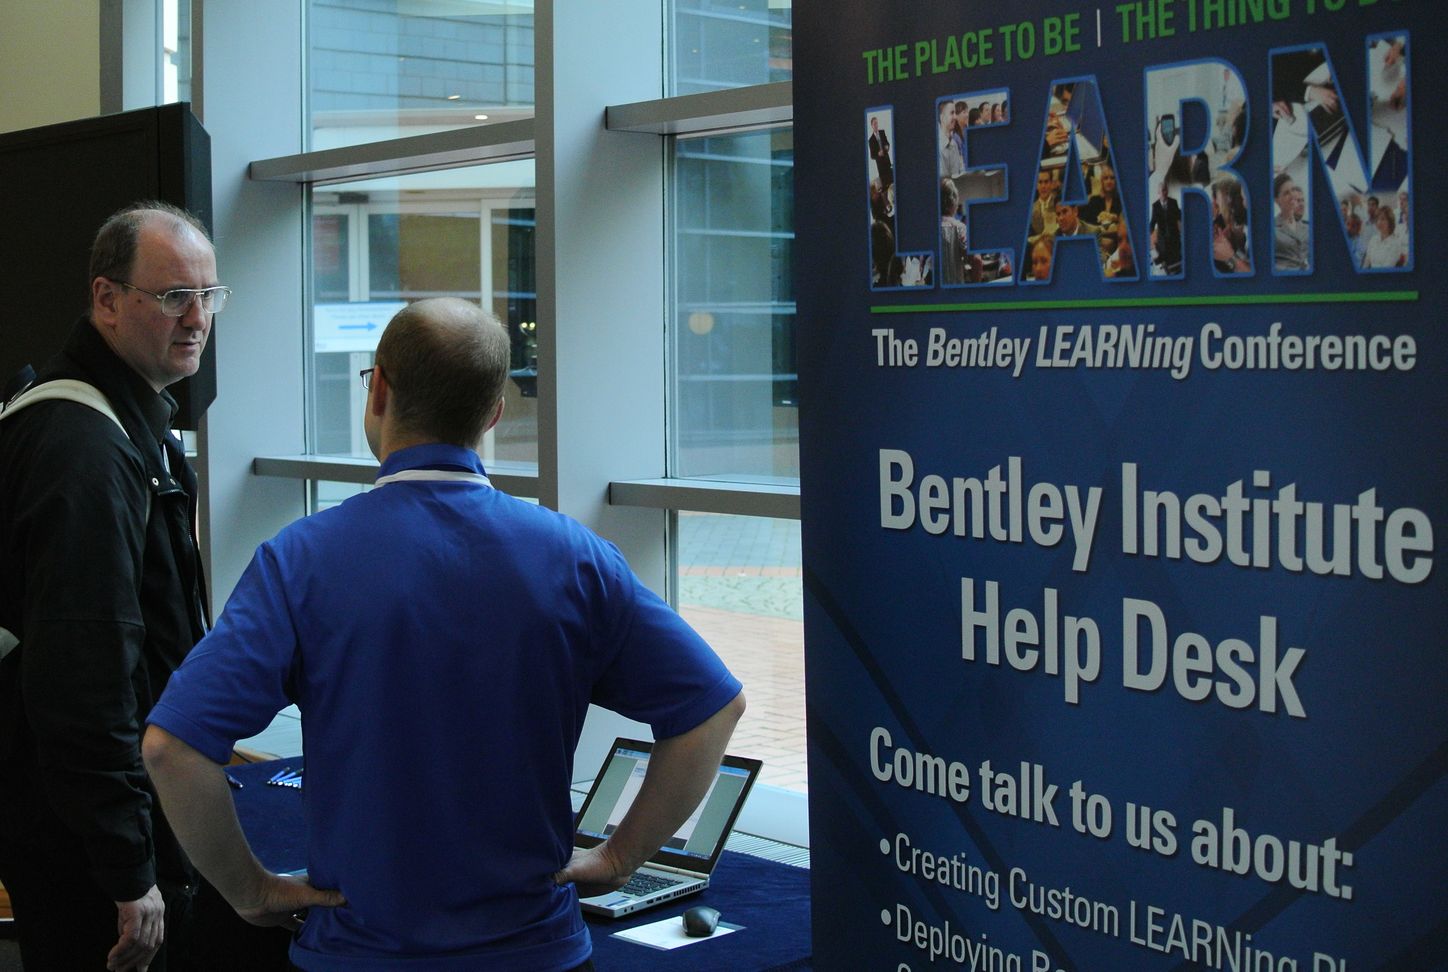 Bentley Institute